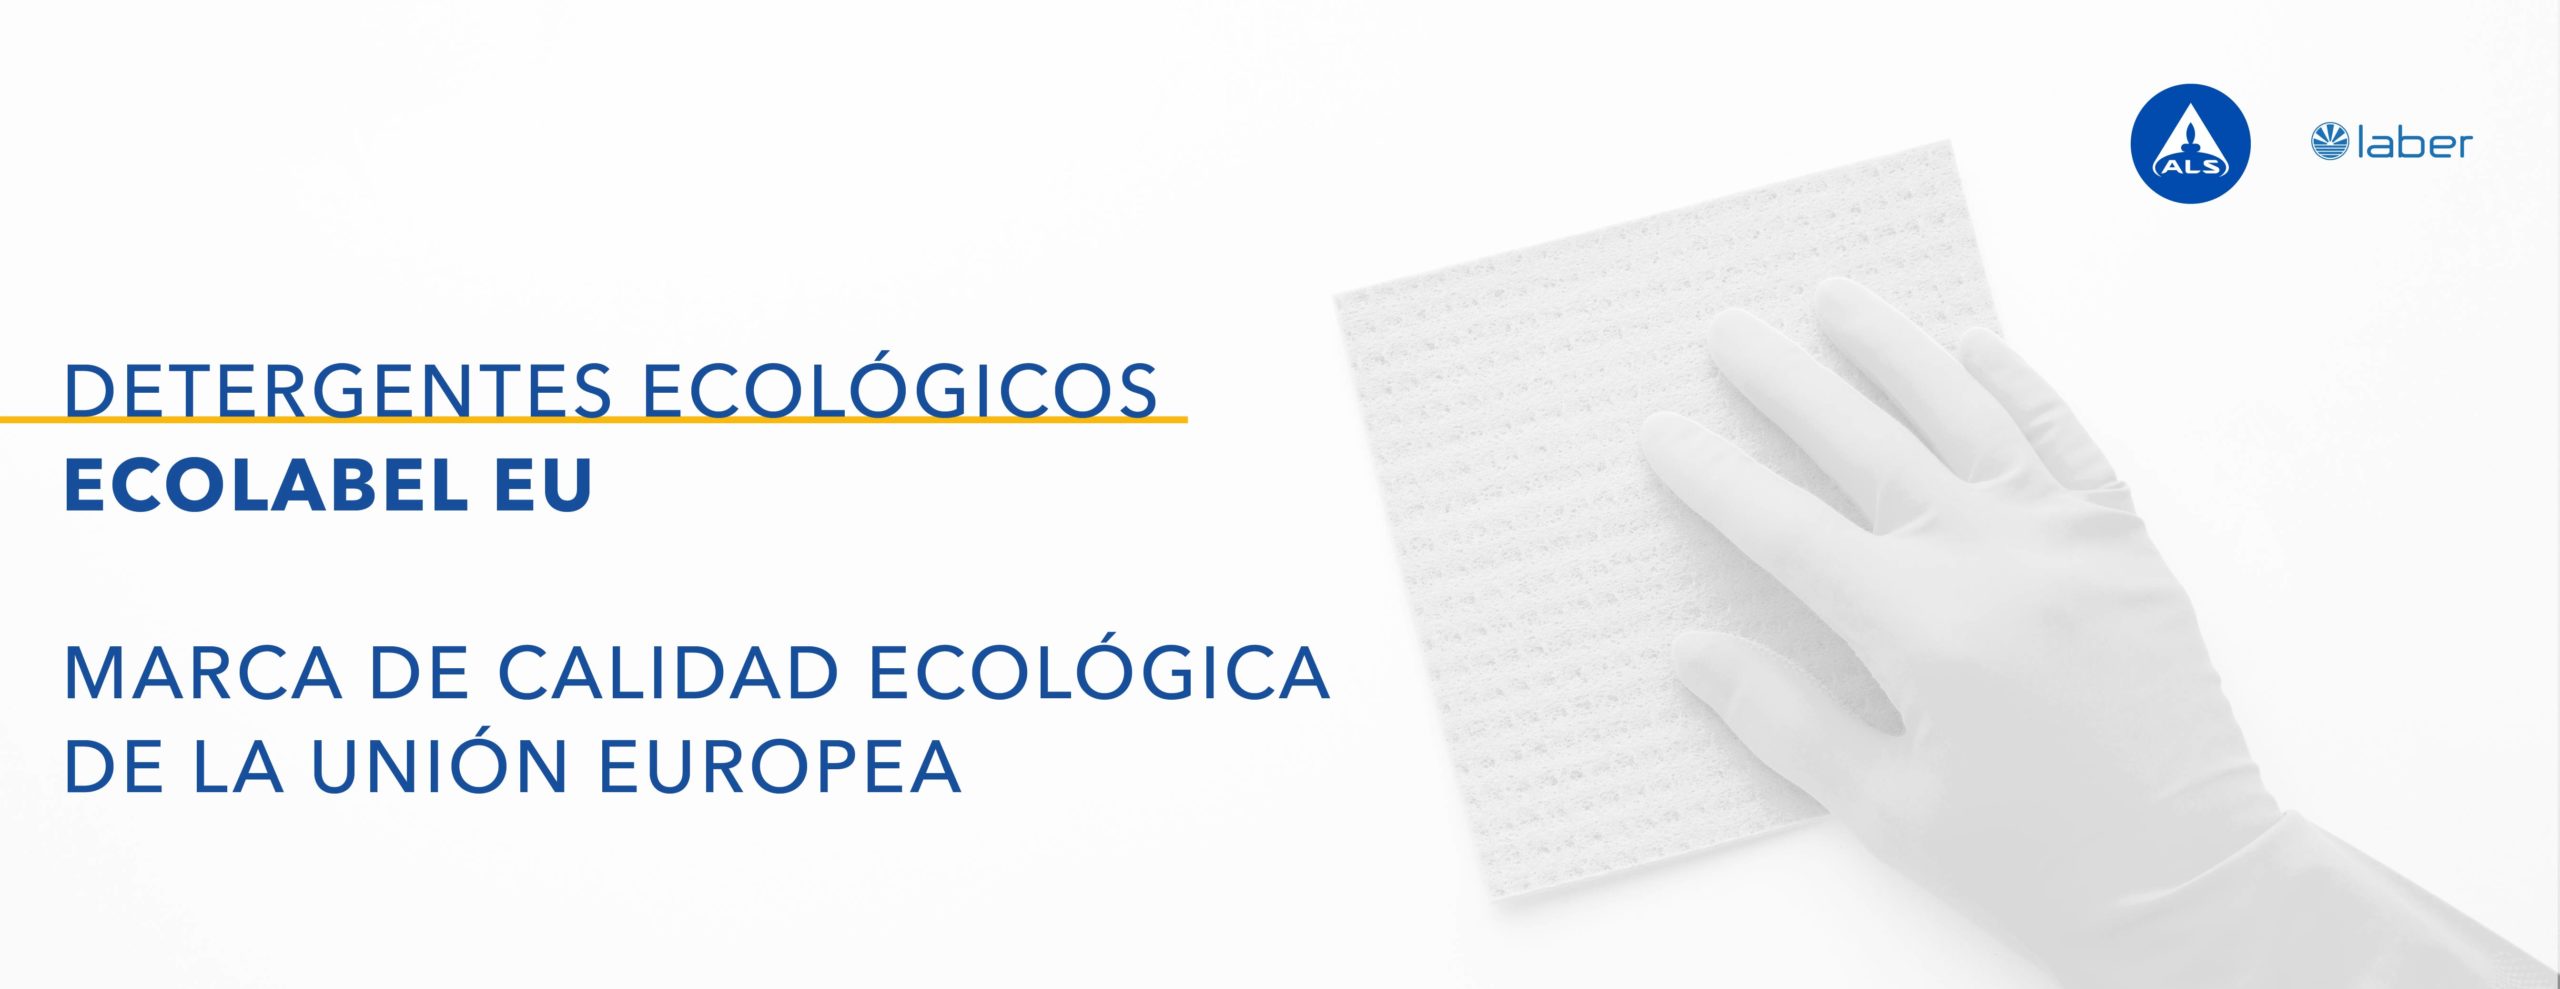 Marca de calidad ecológica de la Unión Europea (Ecolabel EU)
